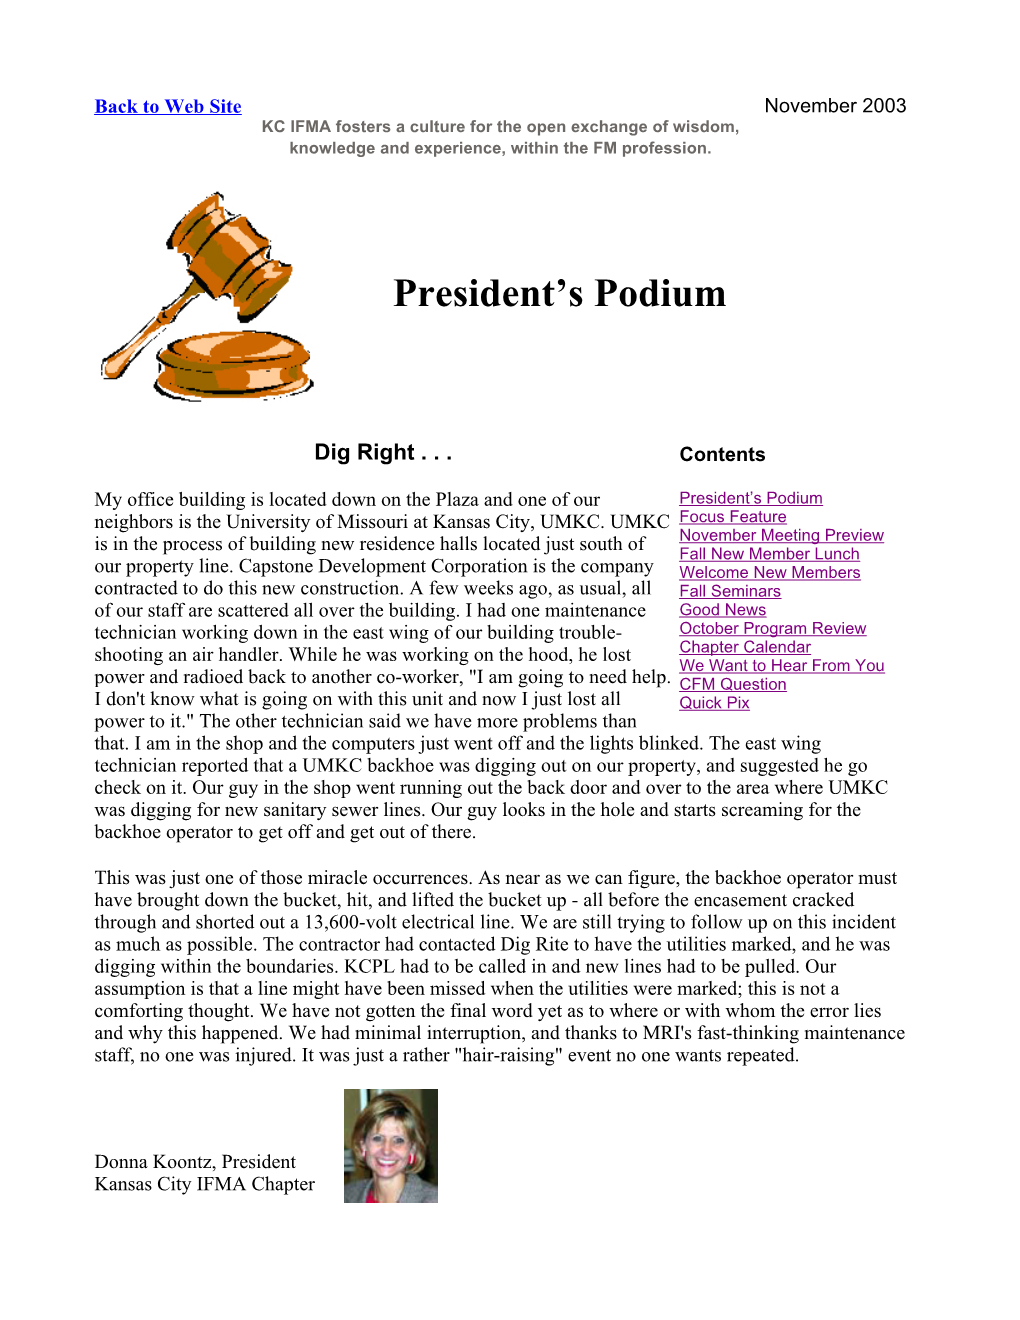 President's Podium